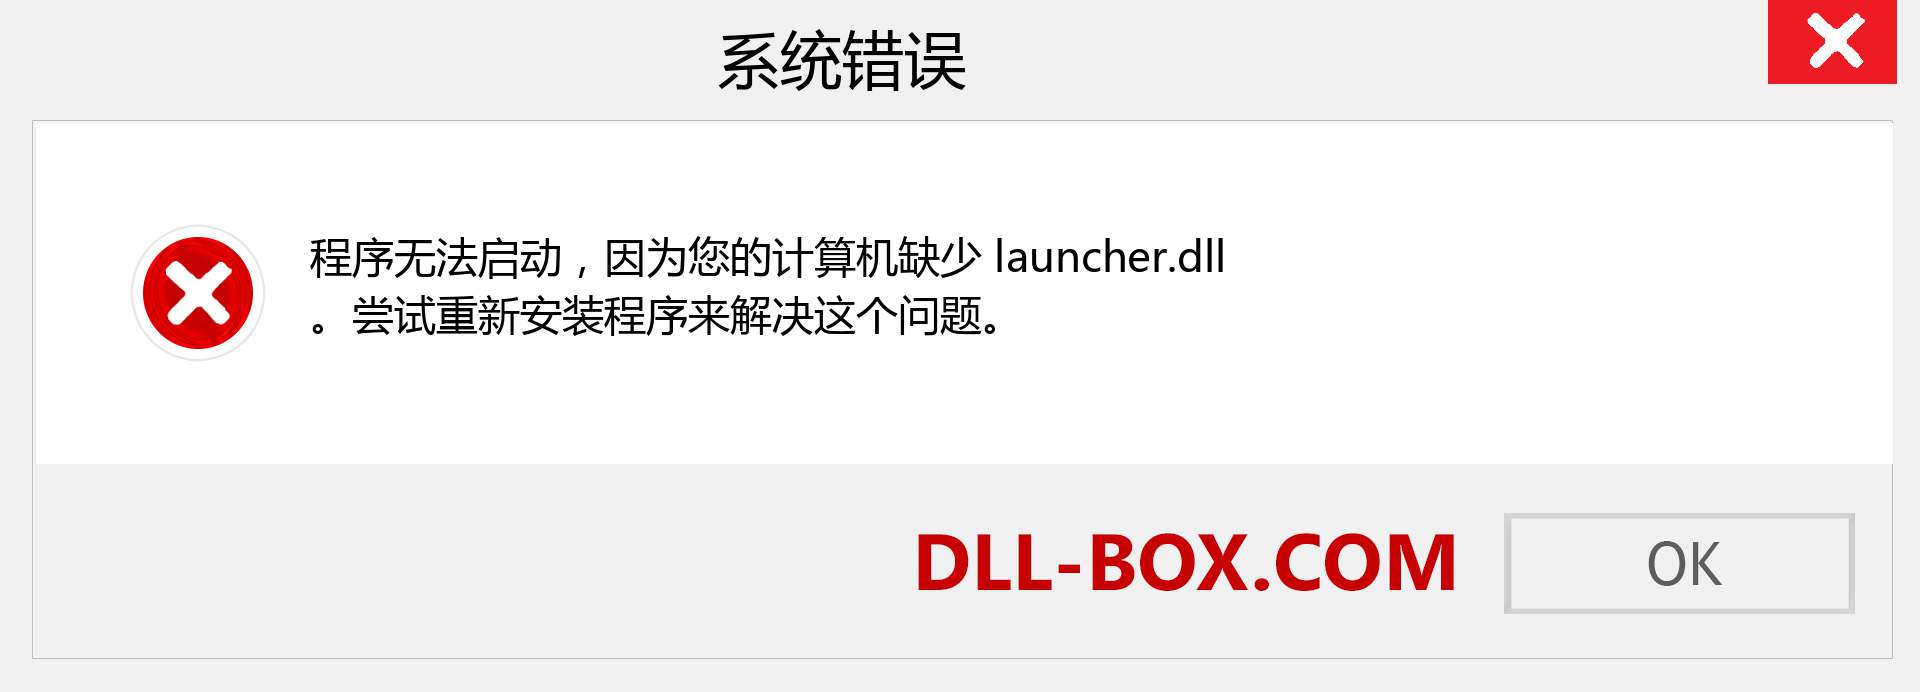 launcher.dll 文件丢失？。 适用于 Windows 7、8、10 的下载 - 修复 Windows、照片、图像上的 launcher dll 丢失错误